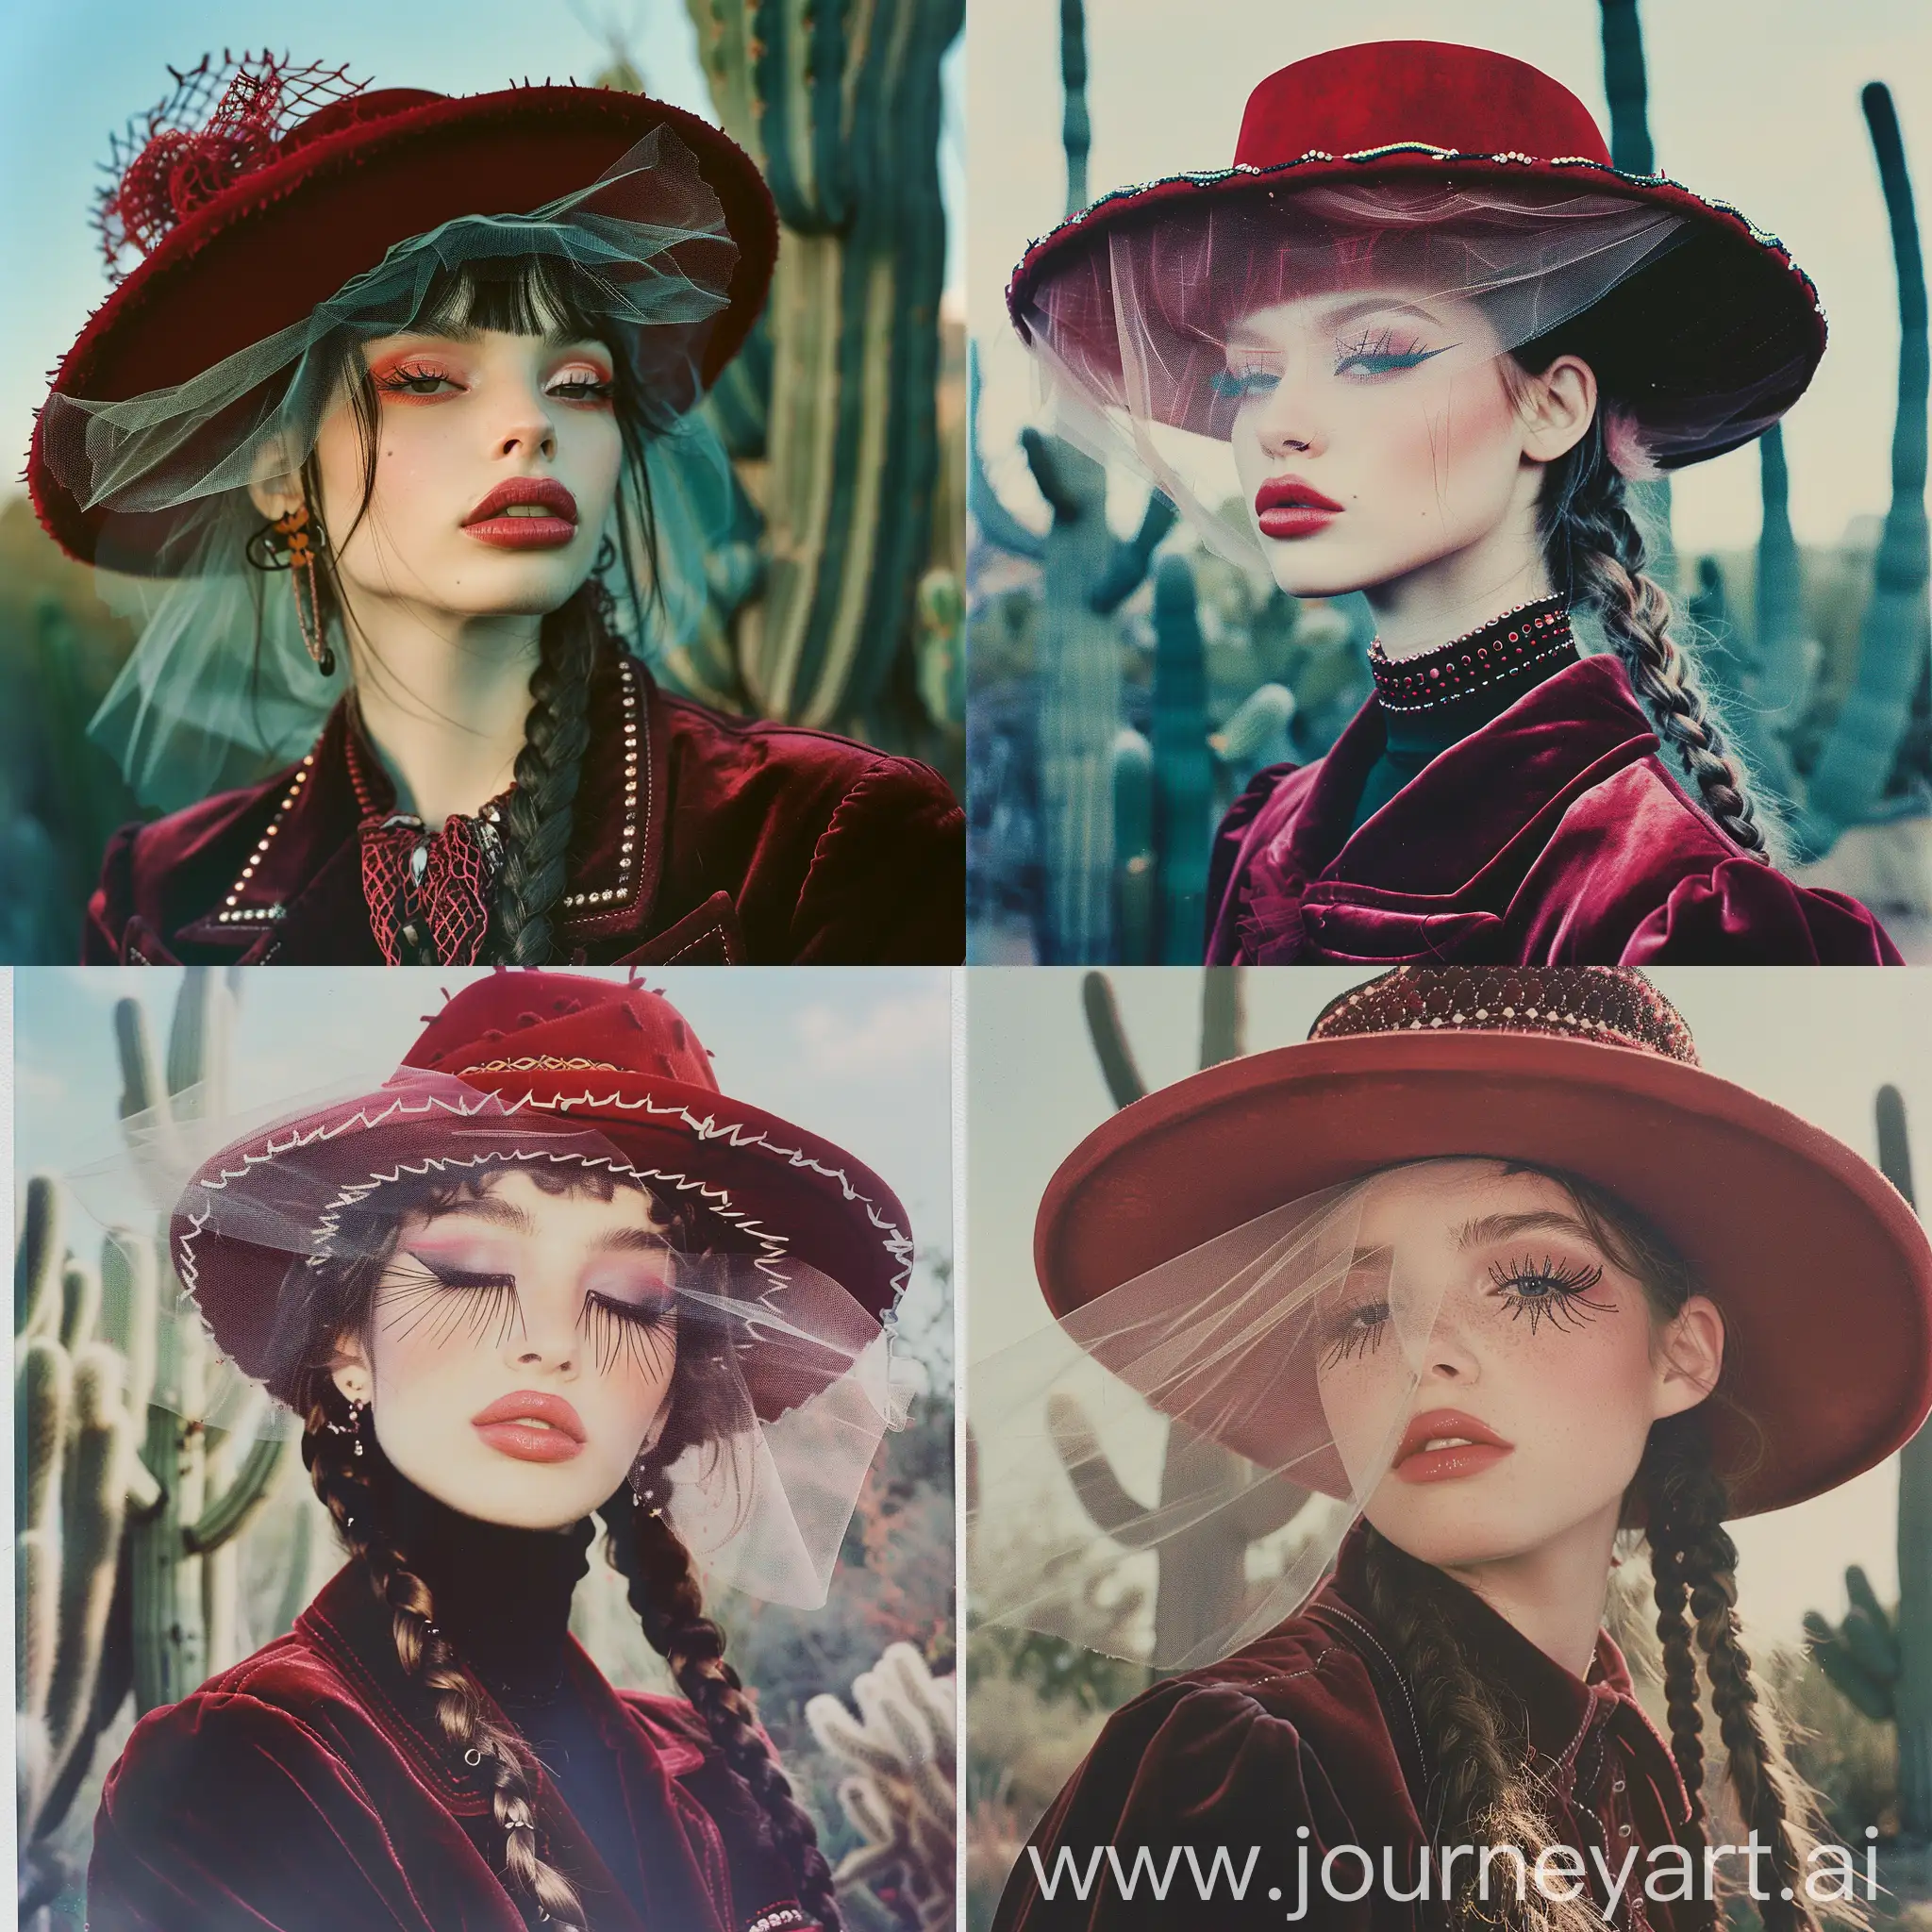 ⠀ ⠀⠀⠀ ⠀⠀⠀ beautiful rave girl, Balenciaga model, бархатная куртка, красная шляпа гаучо с прозрачной вуалью, косы,длинные ресницы, пухлые губы, детальная прорисовка глаз, внимание к деталям, film grain, высокое качество, на фоне кактусы, vogue fashion illustration, cinematic, photo taken with provia, Polaroid, 1/250s, f/2.8, ISO 100